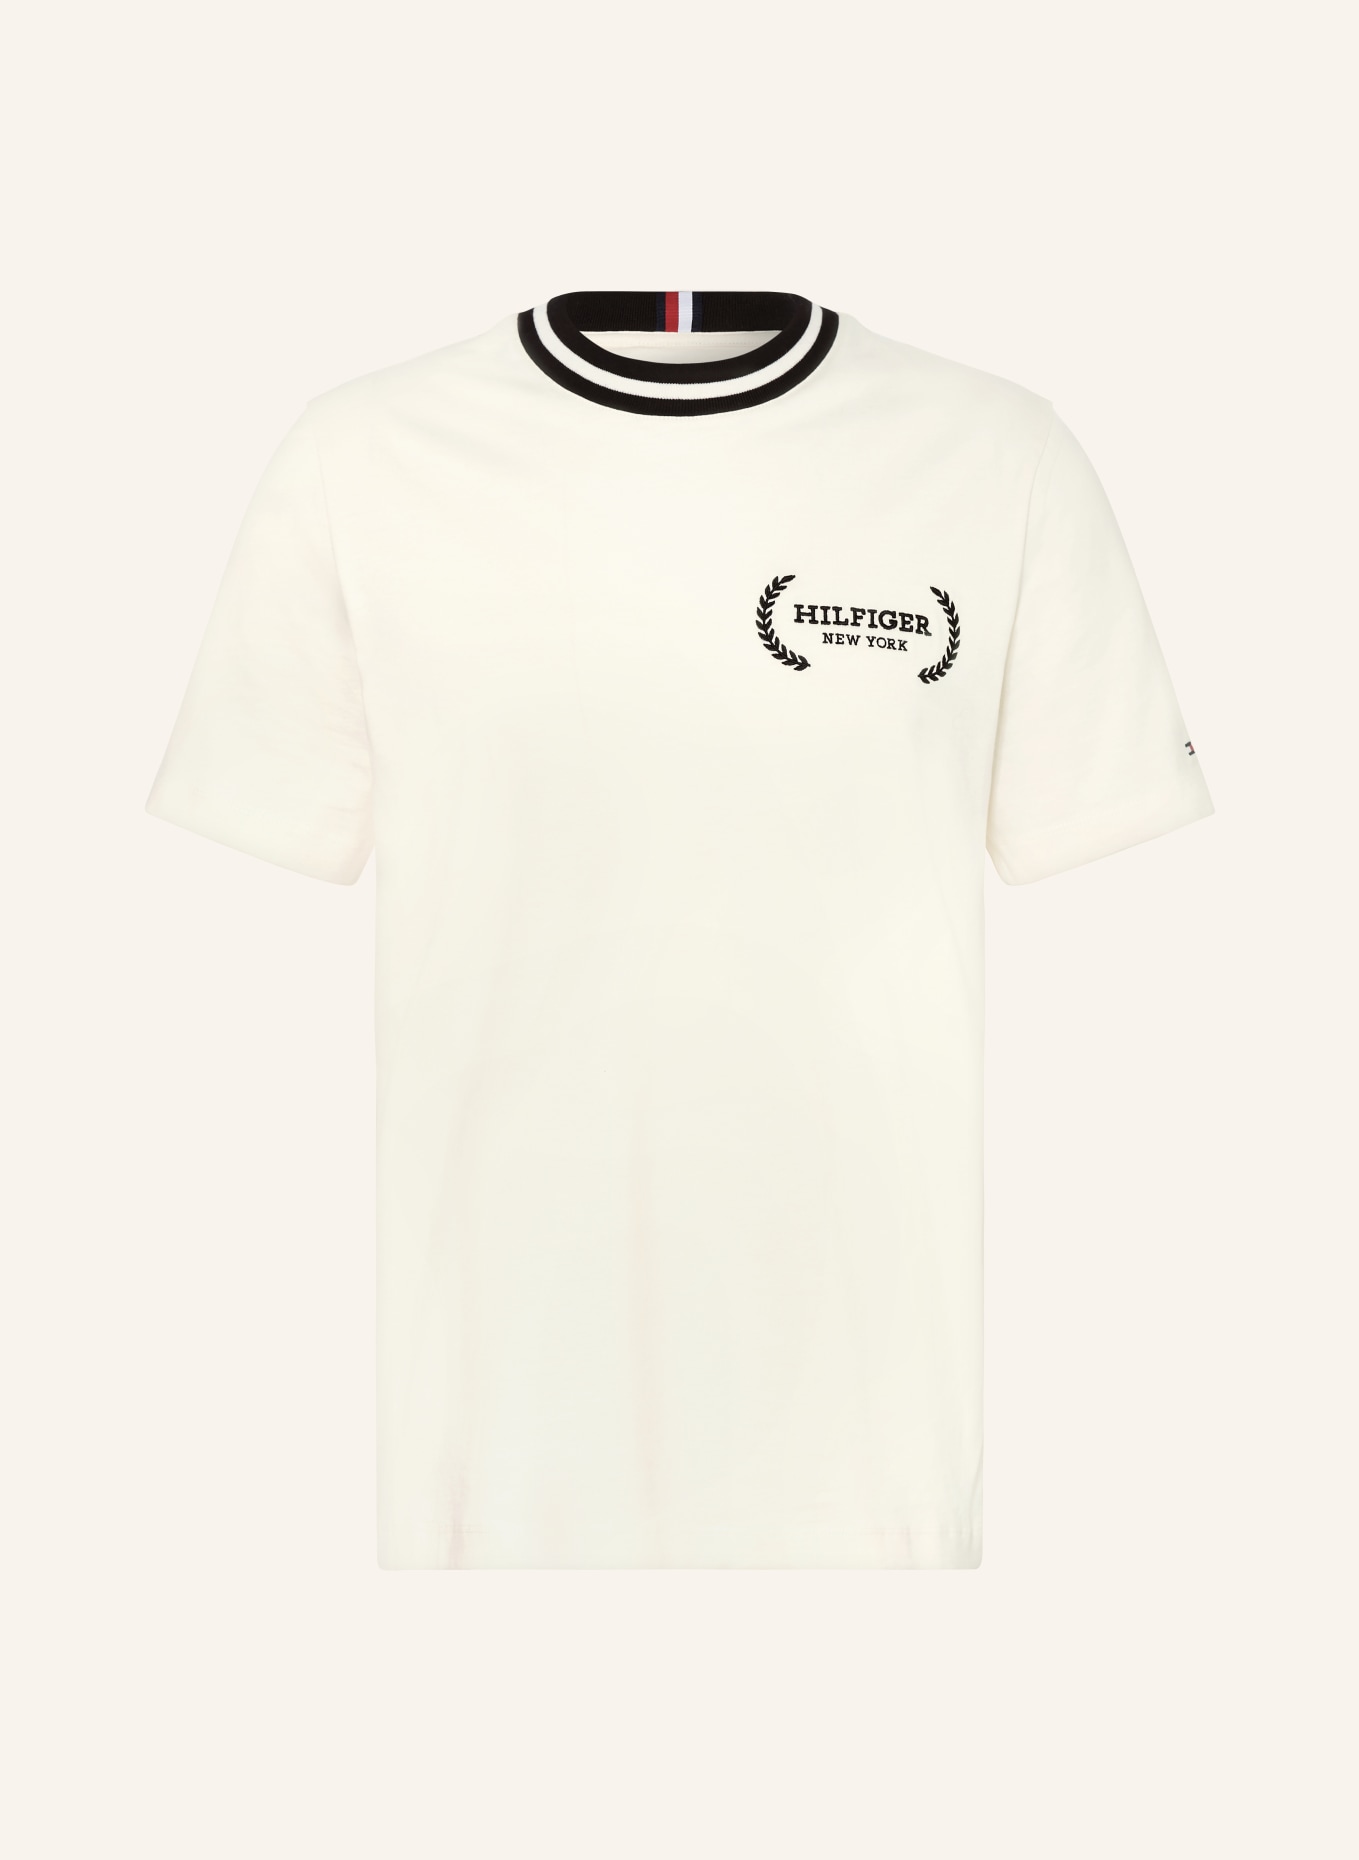 TOMMY HILFIGER T-Shirt LAUREL, Farbe: WEISS (Bild 1)